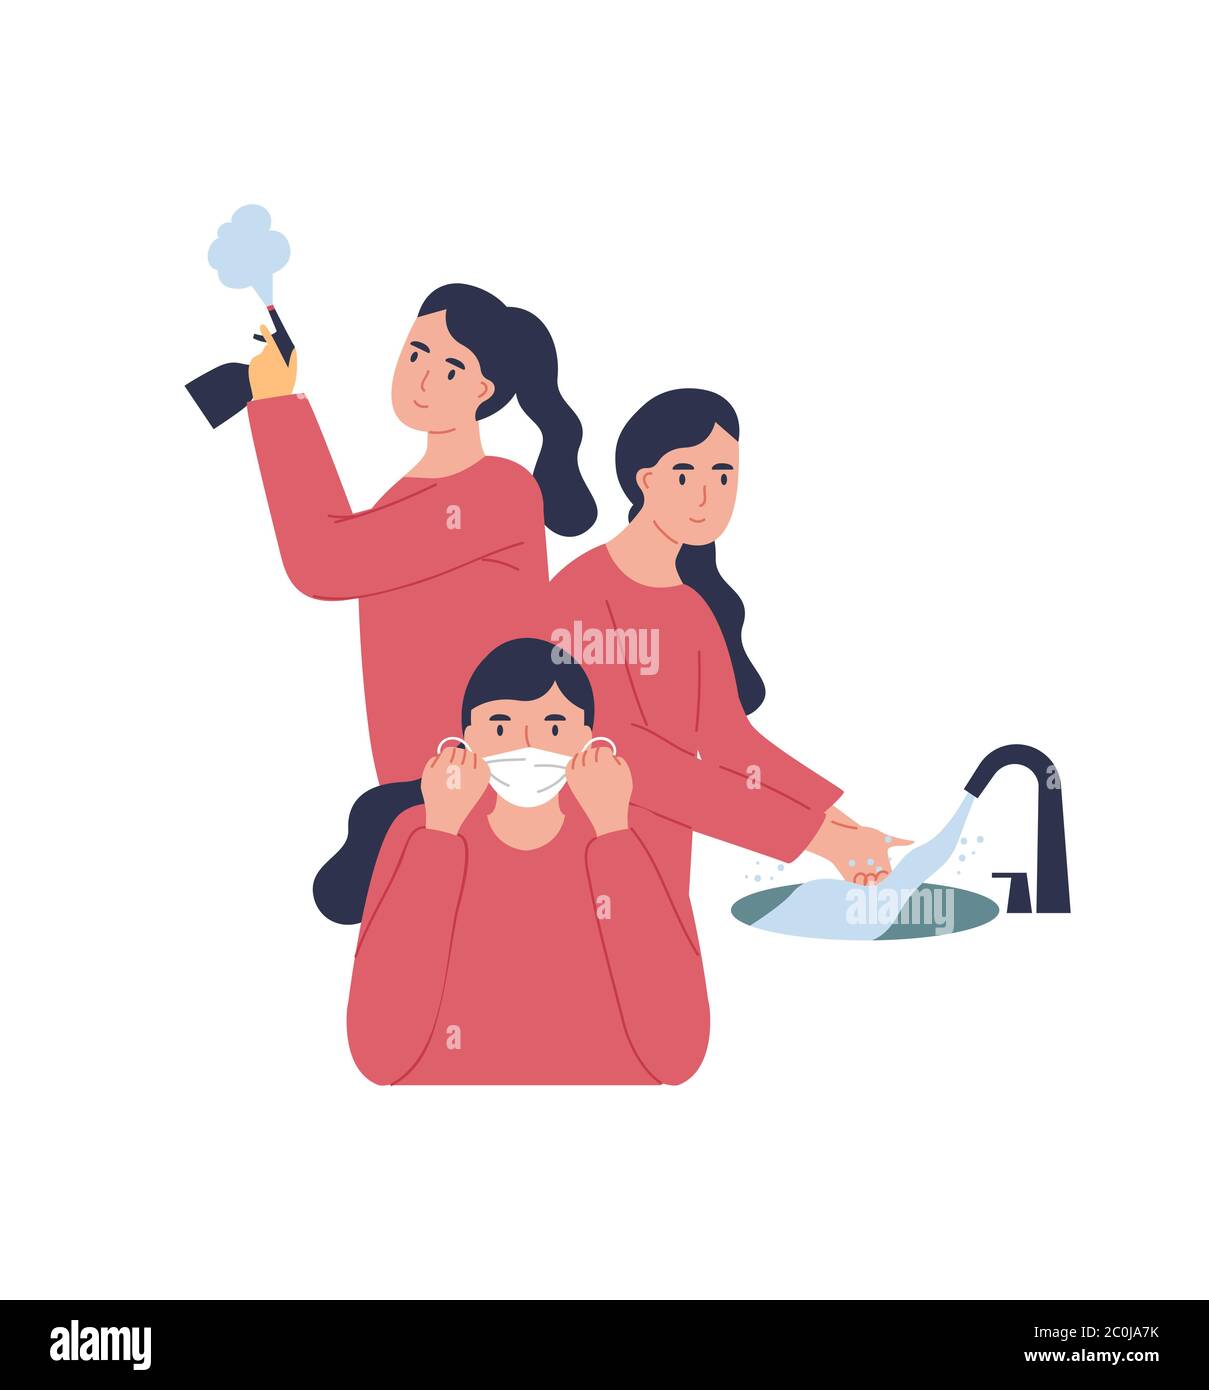 Frau Charakter unter Gesundheitsschutzmaßnahmen für Coronavirus-Prävention. Mädchen Hände waschen, desinfizieren und tragen Gesichtsmaske auf Isolat Stock Vektor